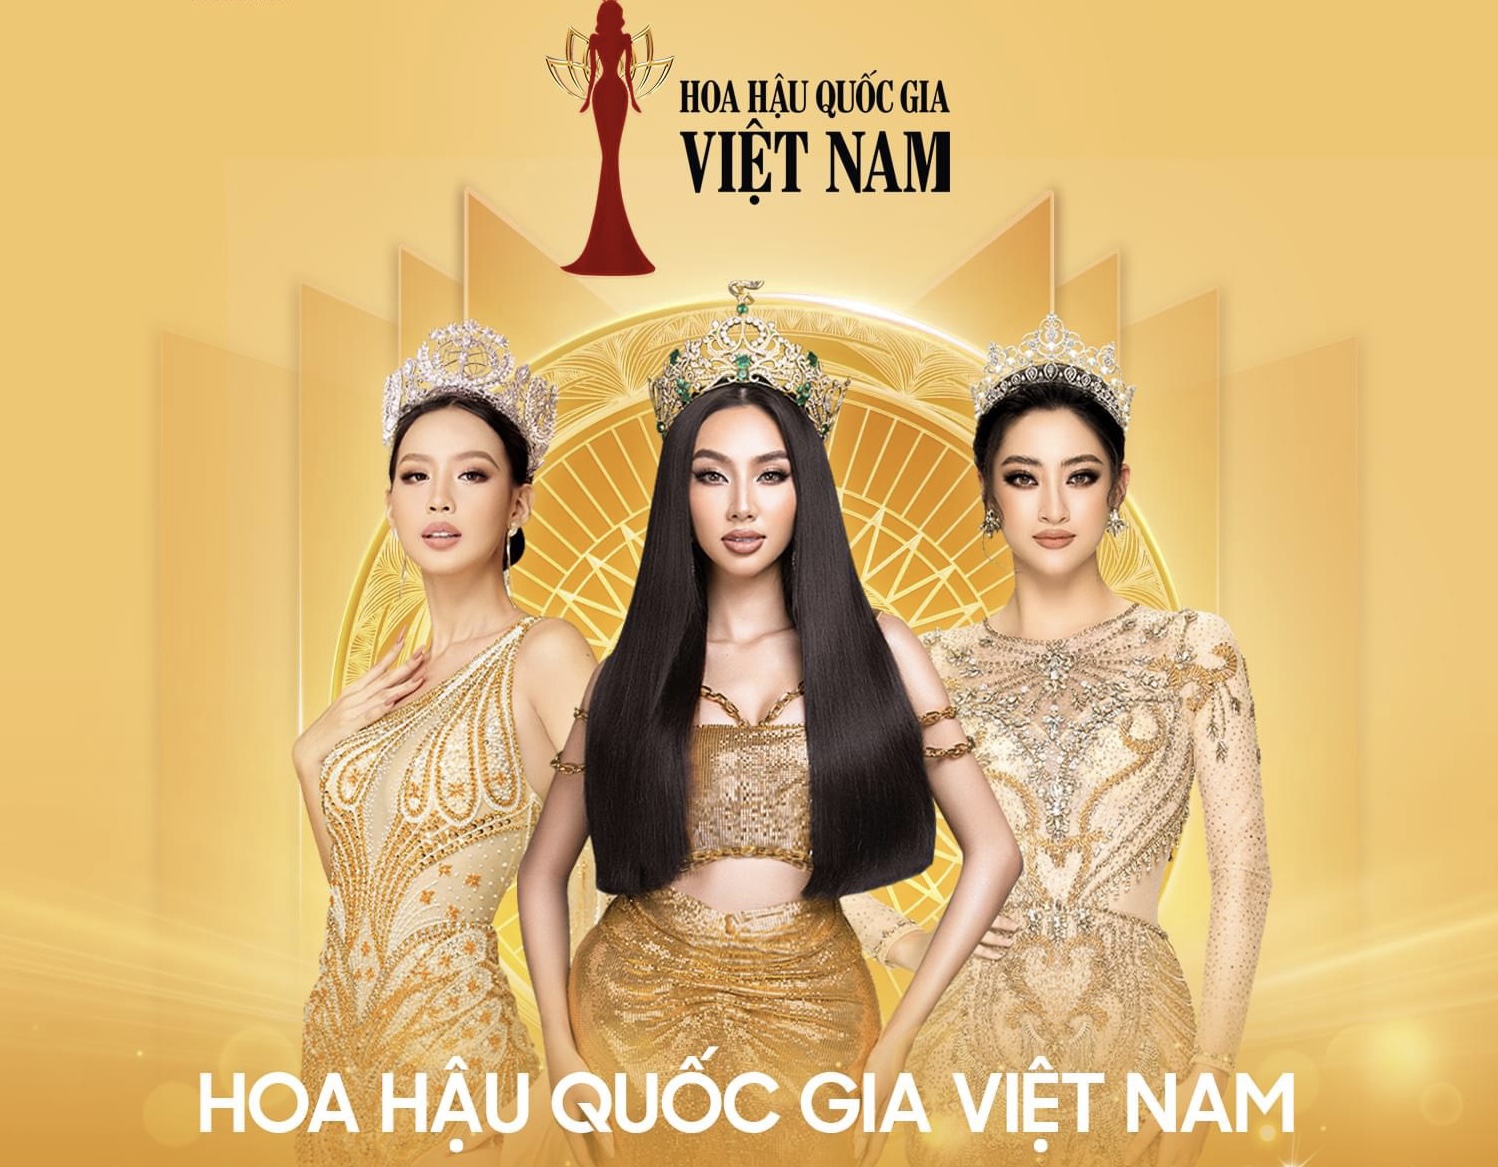 'Bà trùm Hoa hậu' của Sen Vàng công bố loạt cuộc thi nhan sắc trong năm